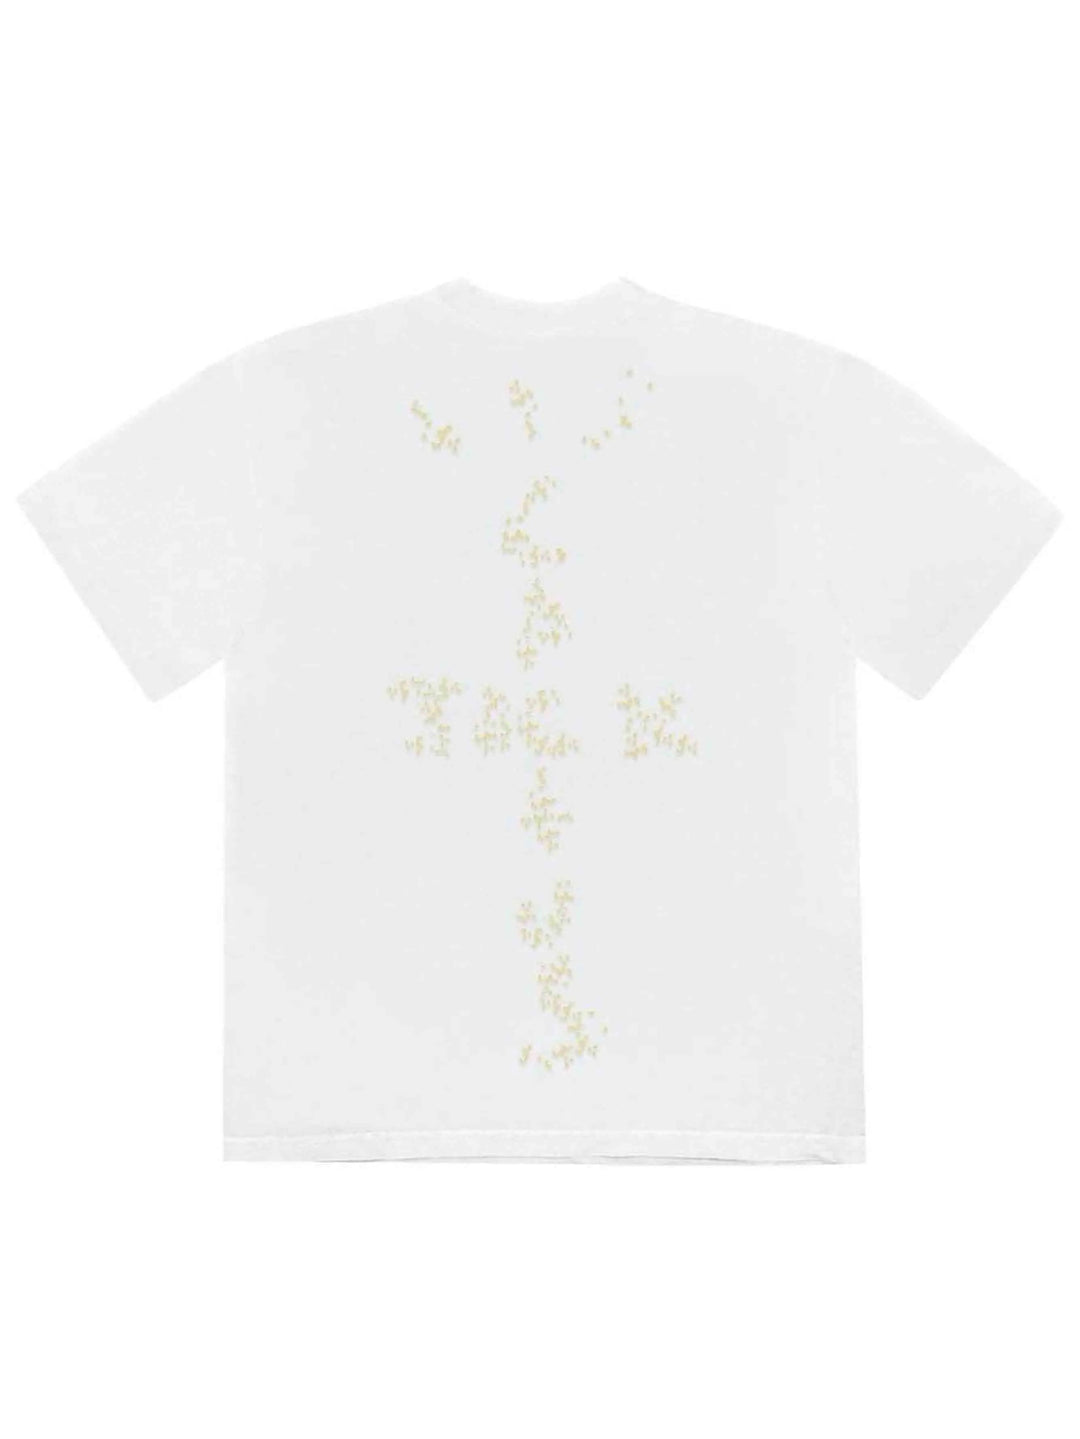 Travis Scott x McDonald's Sesame T-shirt White Prior